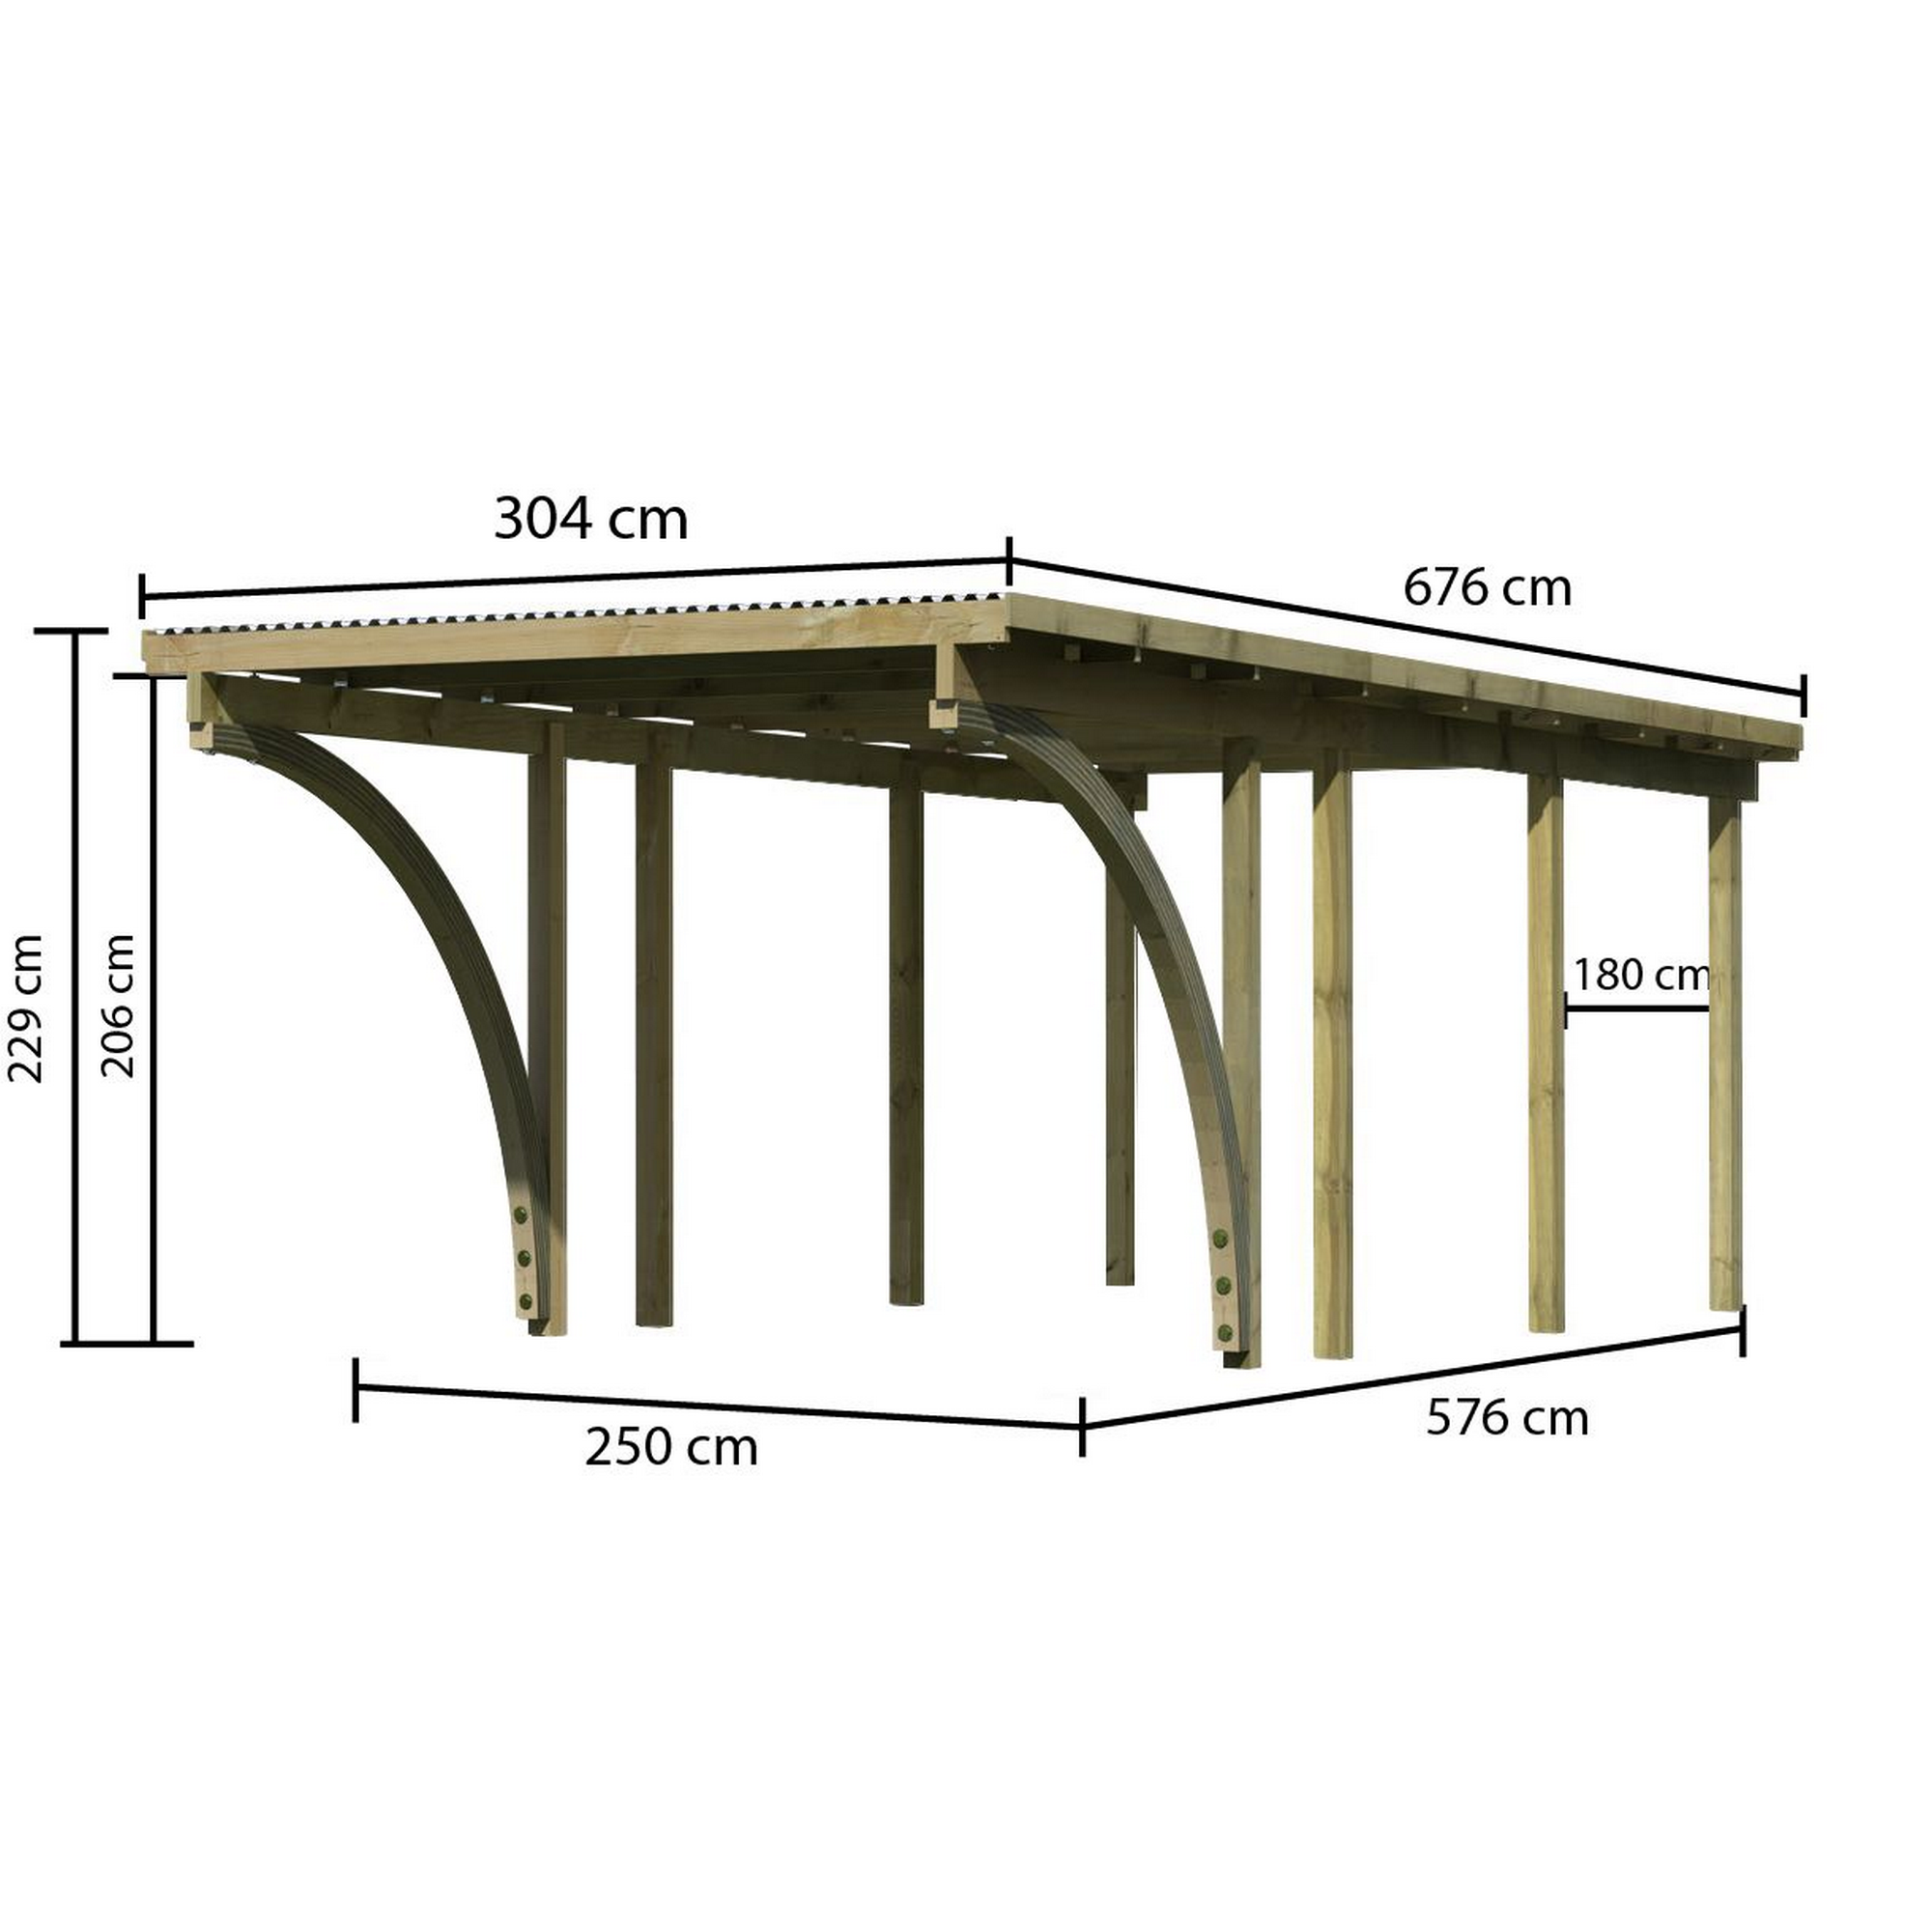 Einzelcarport 'Eco 2' 304 x 676 cm Kiefer KDI PVC-Dach, mit zwei Einfahrtsbögen + product picture